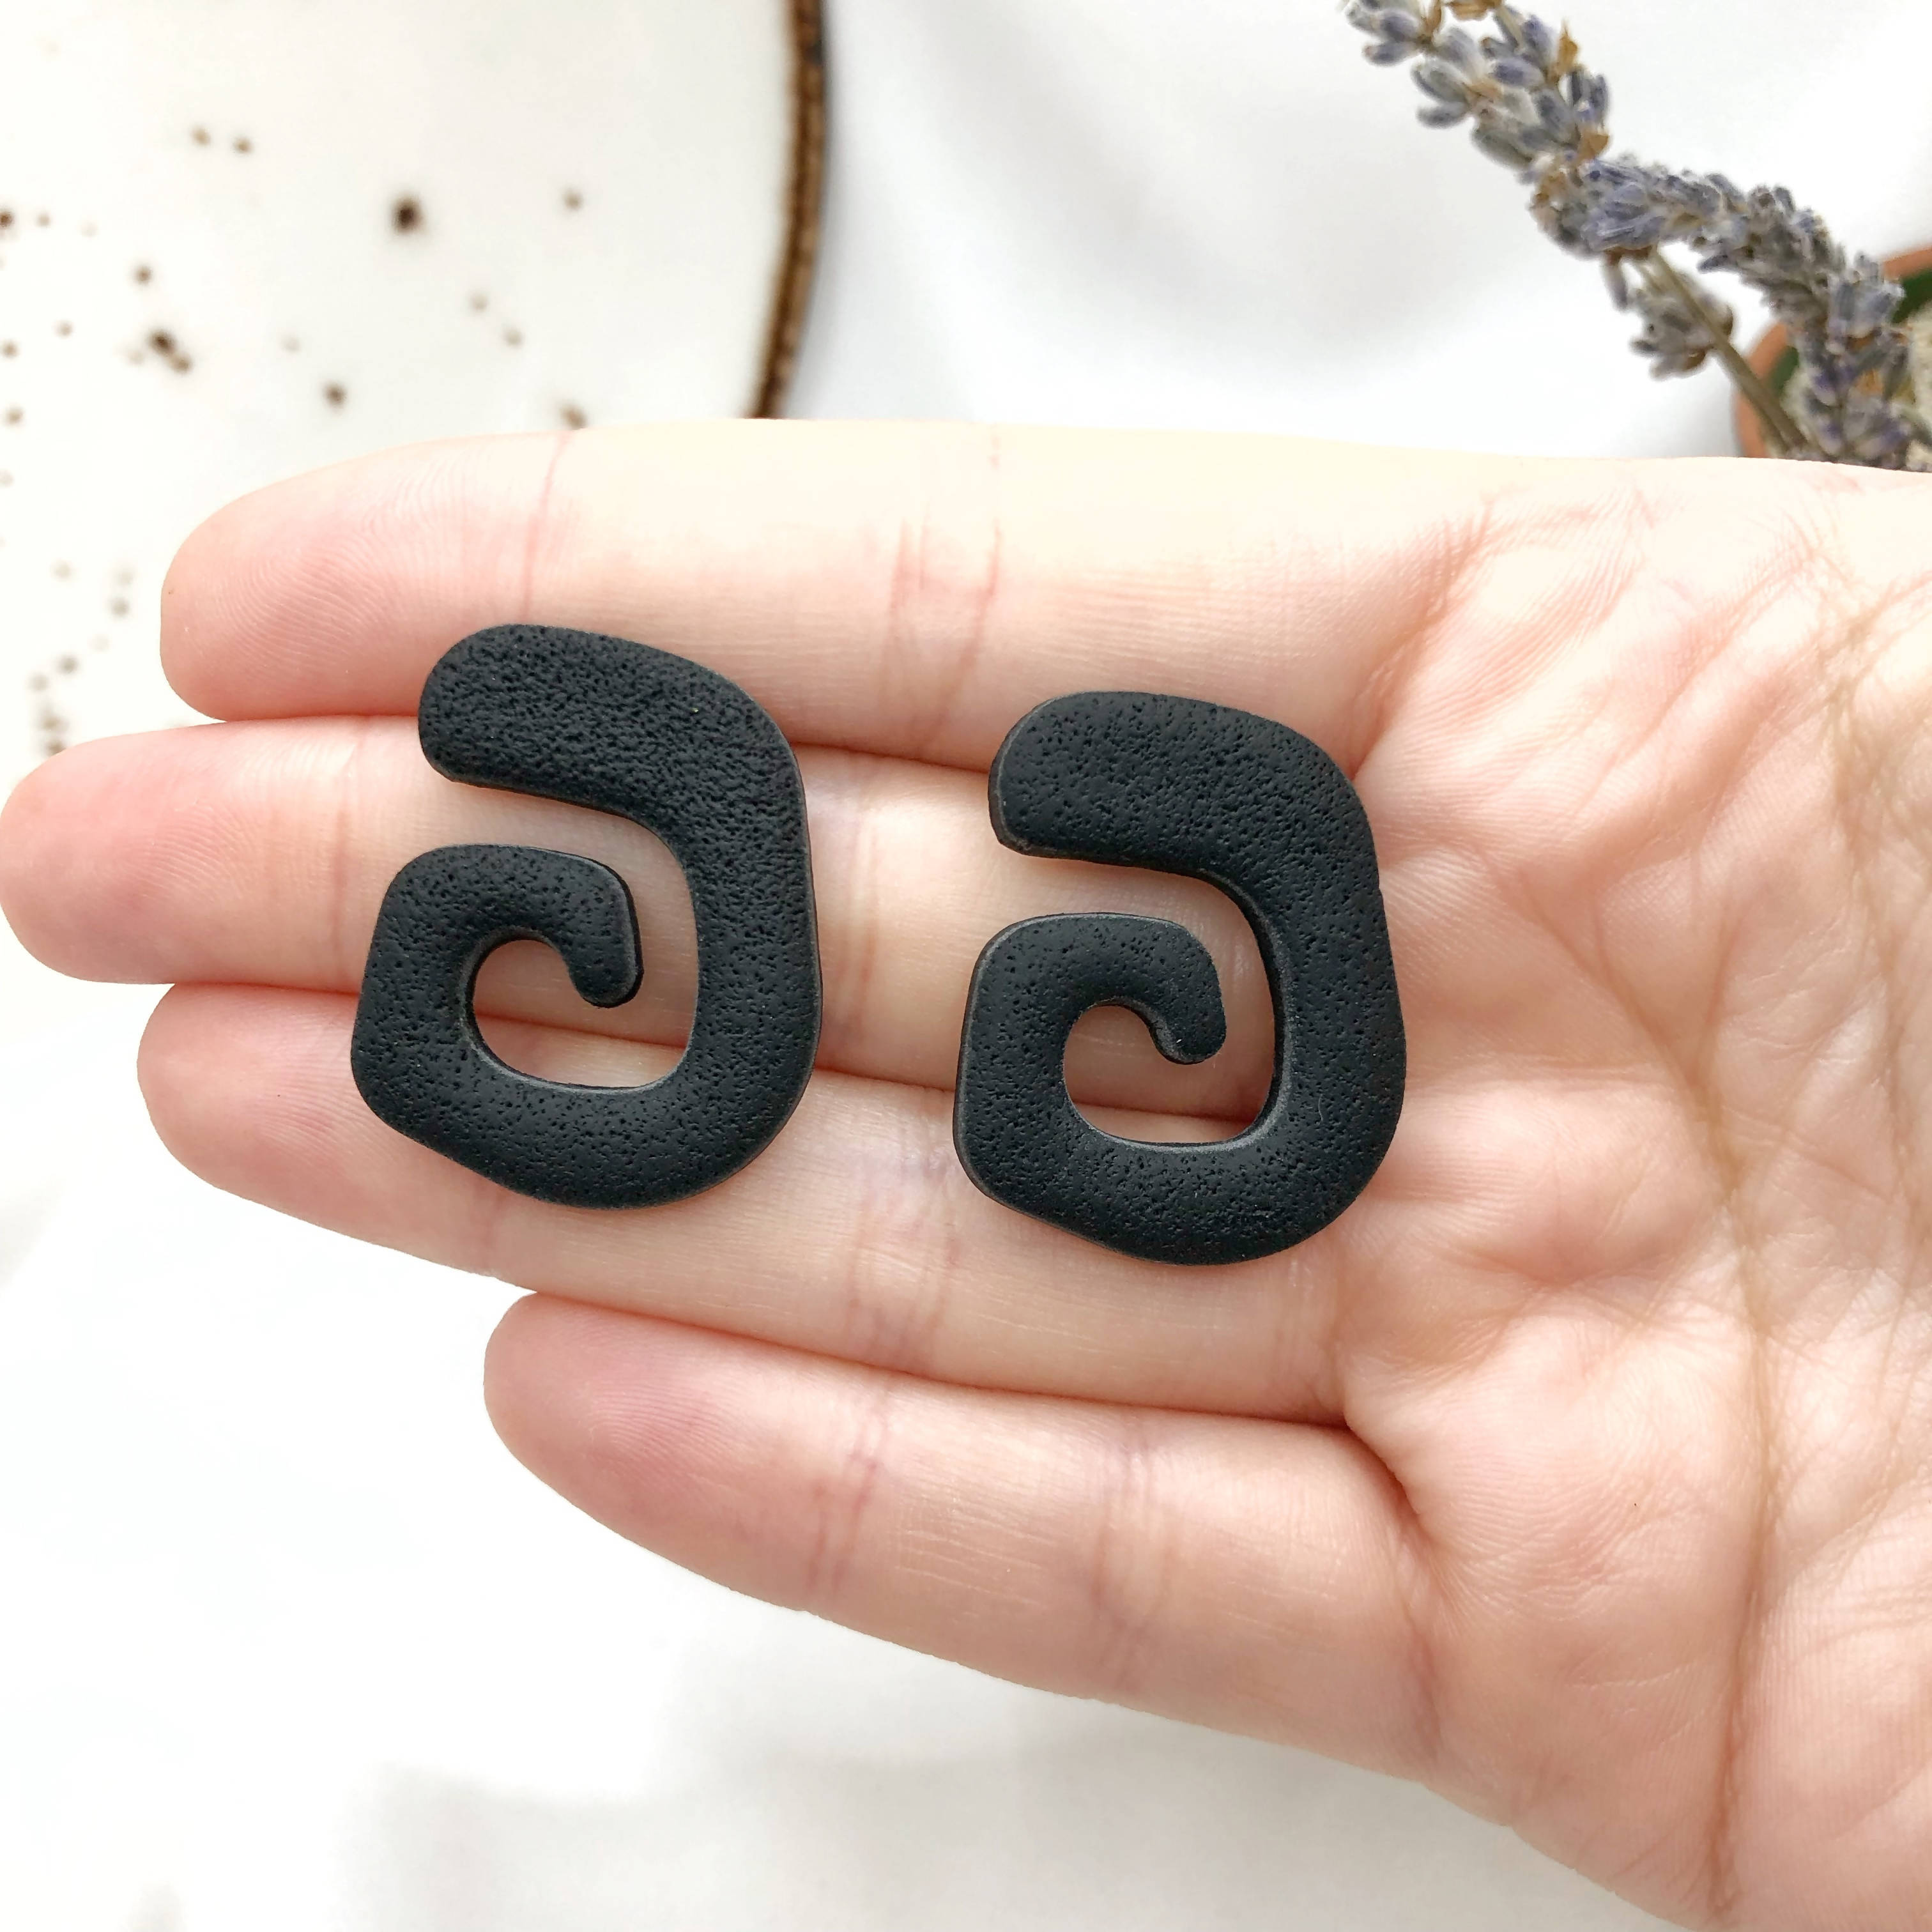 Deep Black Handmade Polymer Clay Earrings - Stylish Earbacks - Nikel Free - Wear Sierra